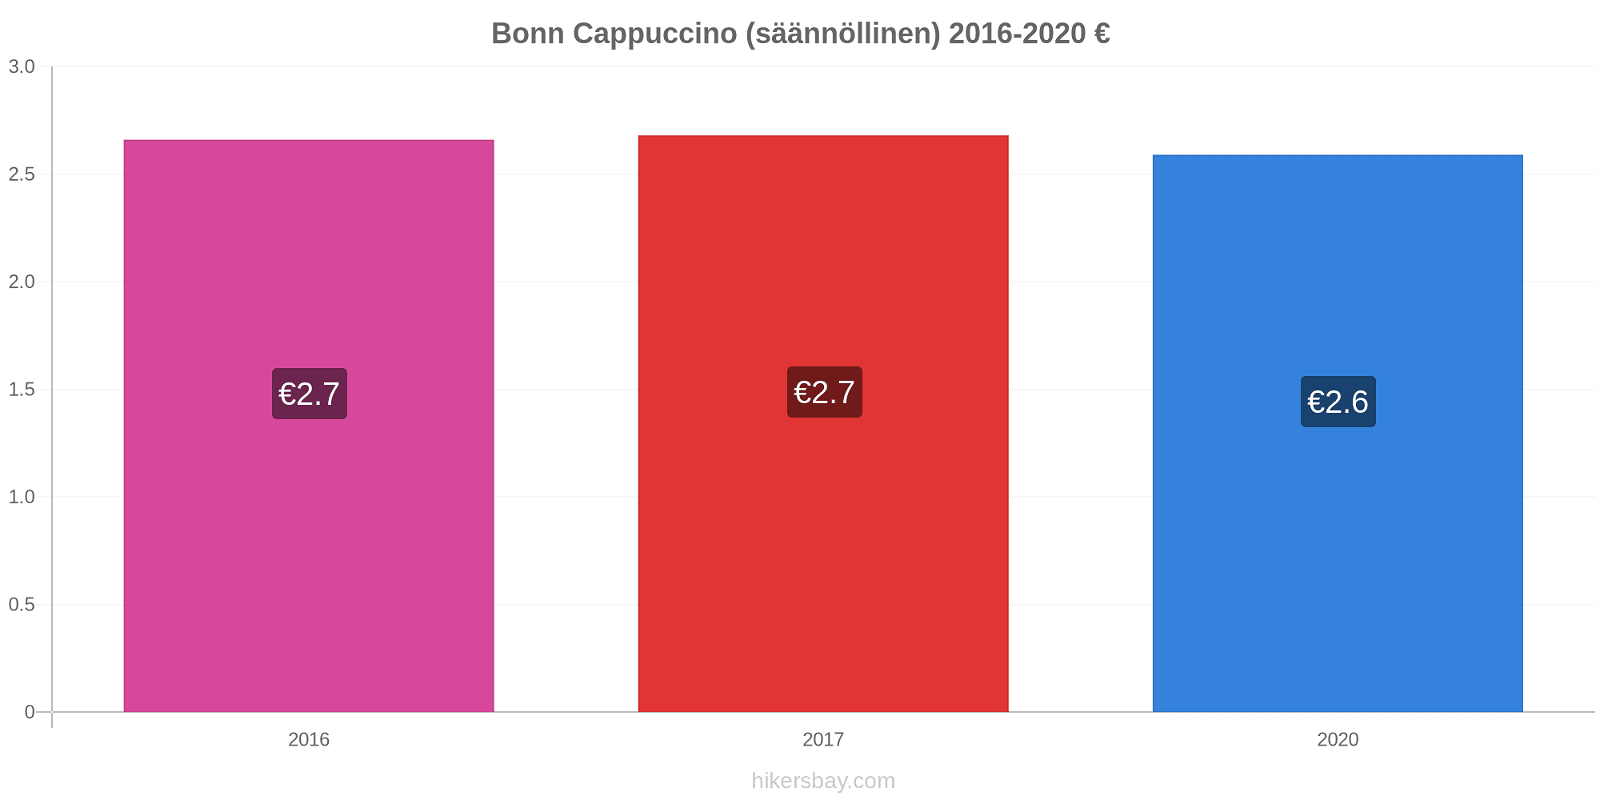 Bonn hintojen muutokset Cappuccino (säännöllinen) hikersbay.com